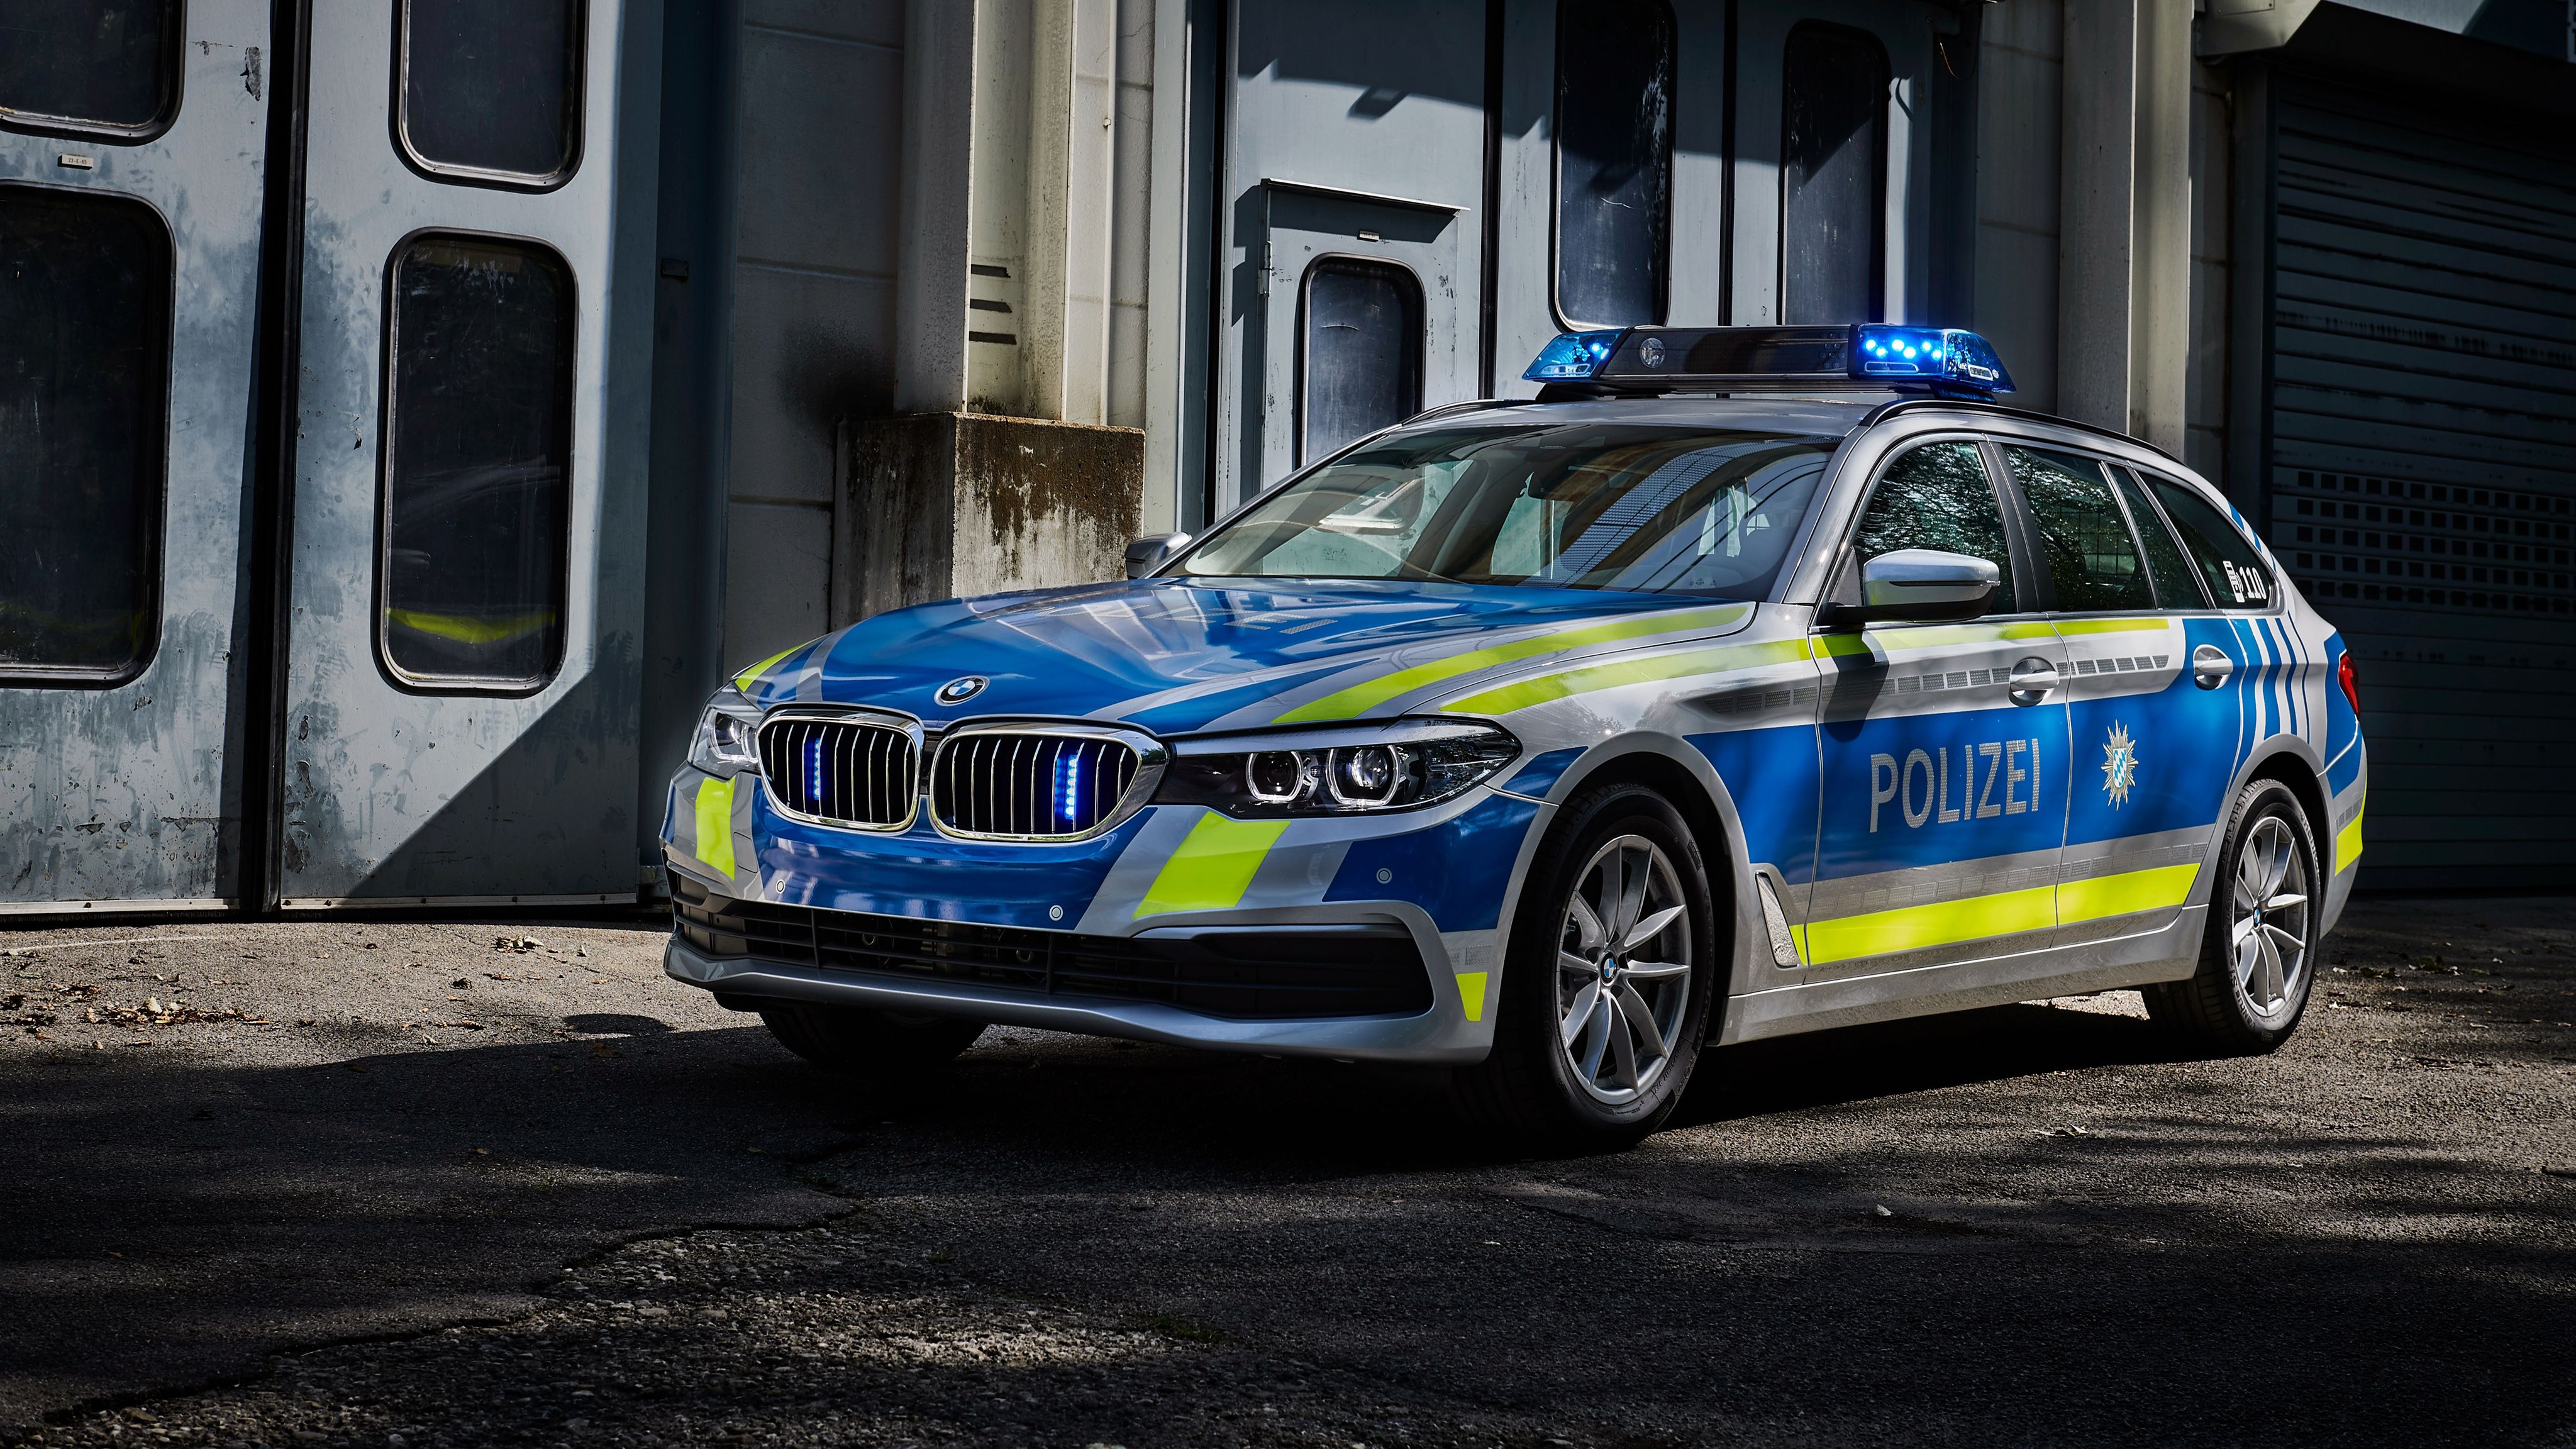 BMW 530d xDrive Touring Polizei Wallpaper. HD Car Wallpaper